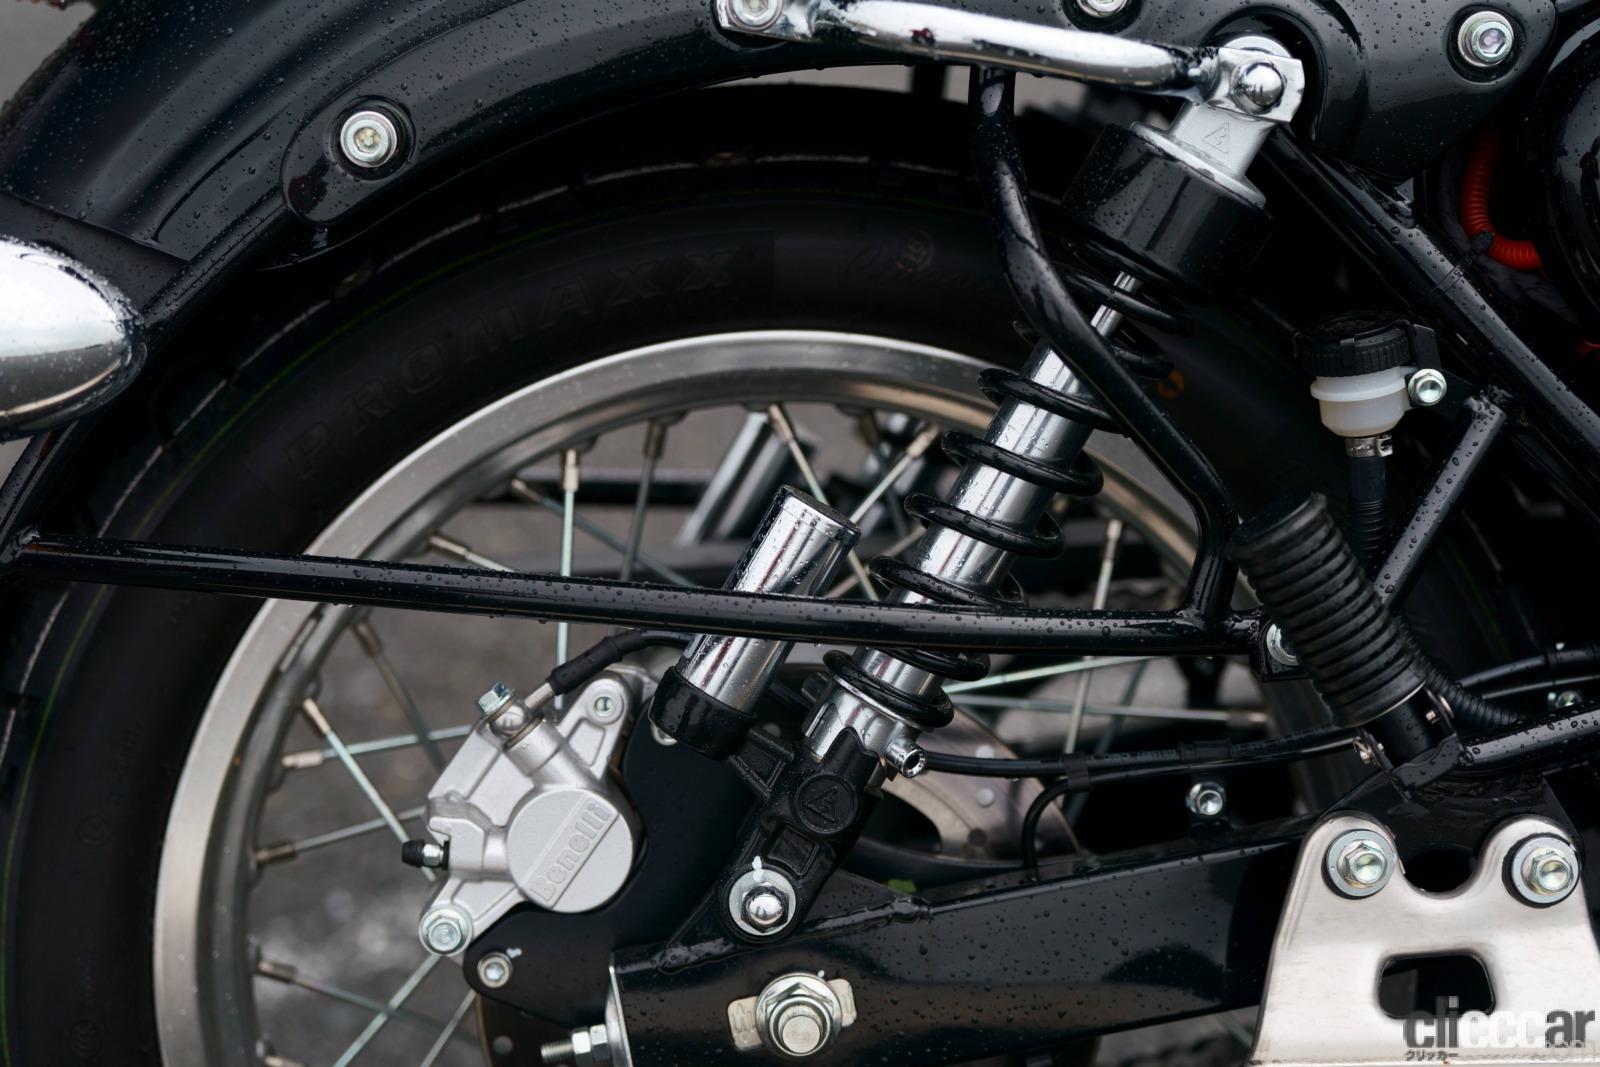 「ベネリの新型「インペリアーレ400」に試乗。のんびりバイク旅が楽しいネオレトロモデル」の26枚目の画像